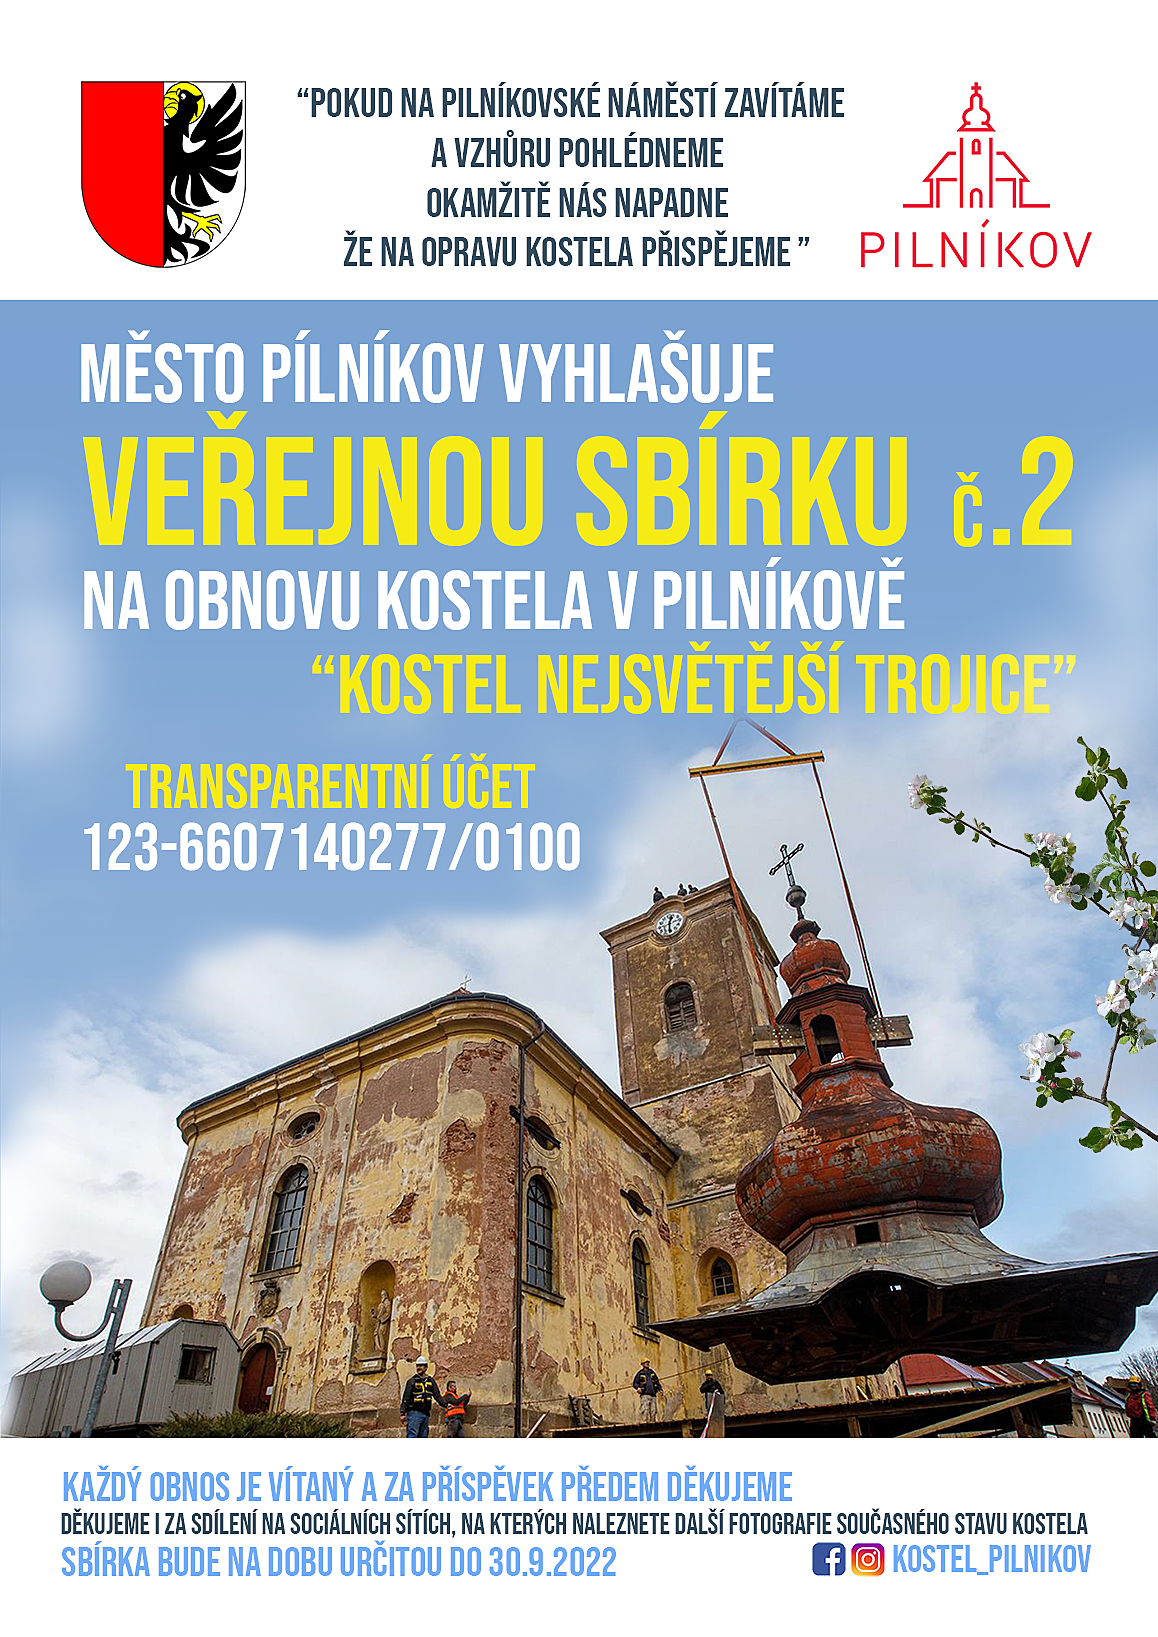 Město Pilníkov vyhlašuje veřejnou sbírku za účelem získání finančních prostředků na obnovu kostela v Pilníkově